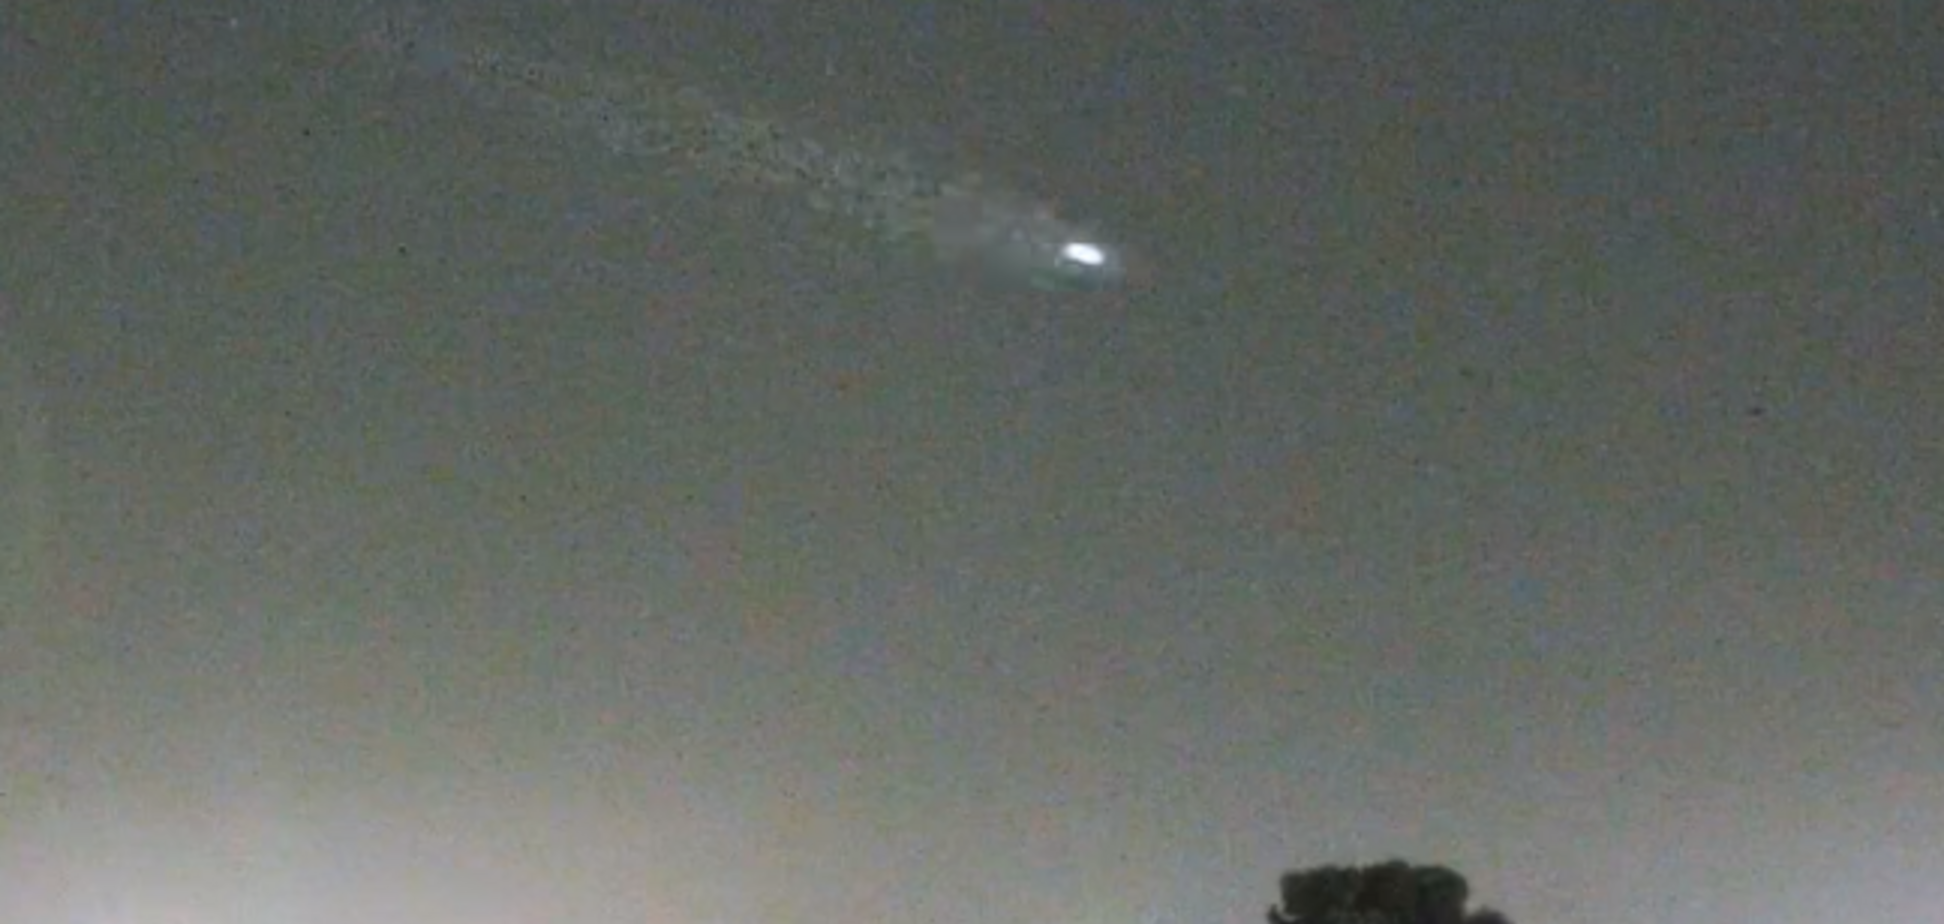 НЛО в небе над Британией всполошило сеть: удивительное видео